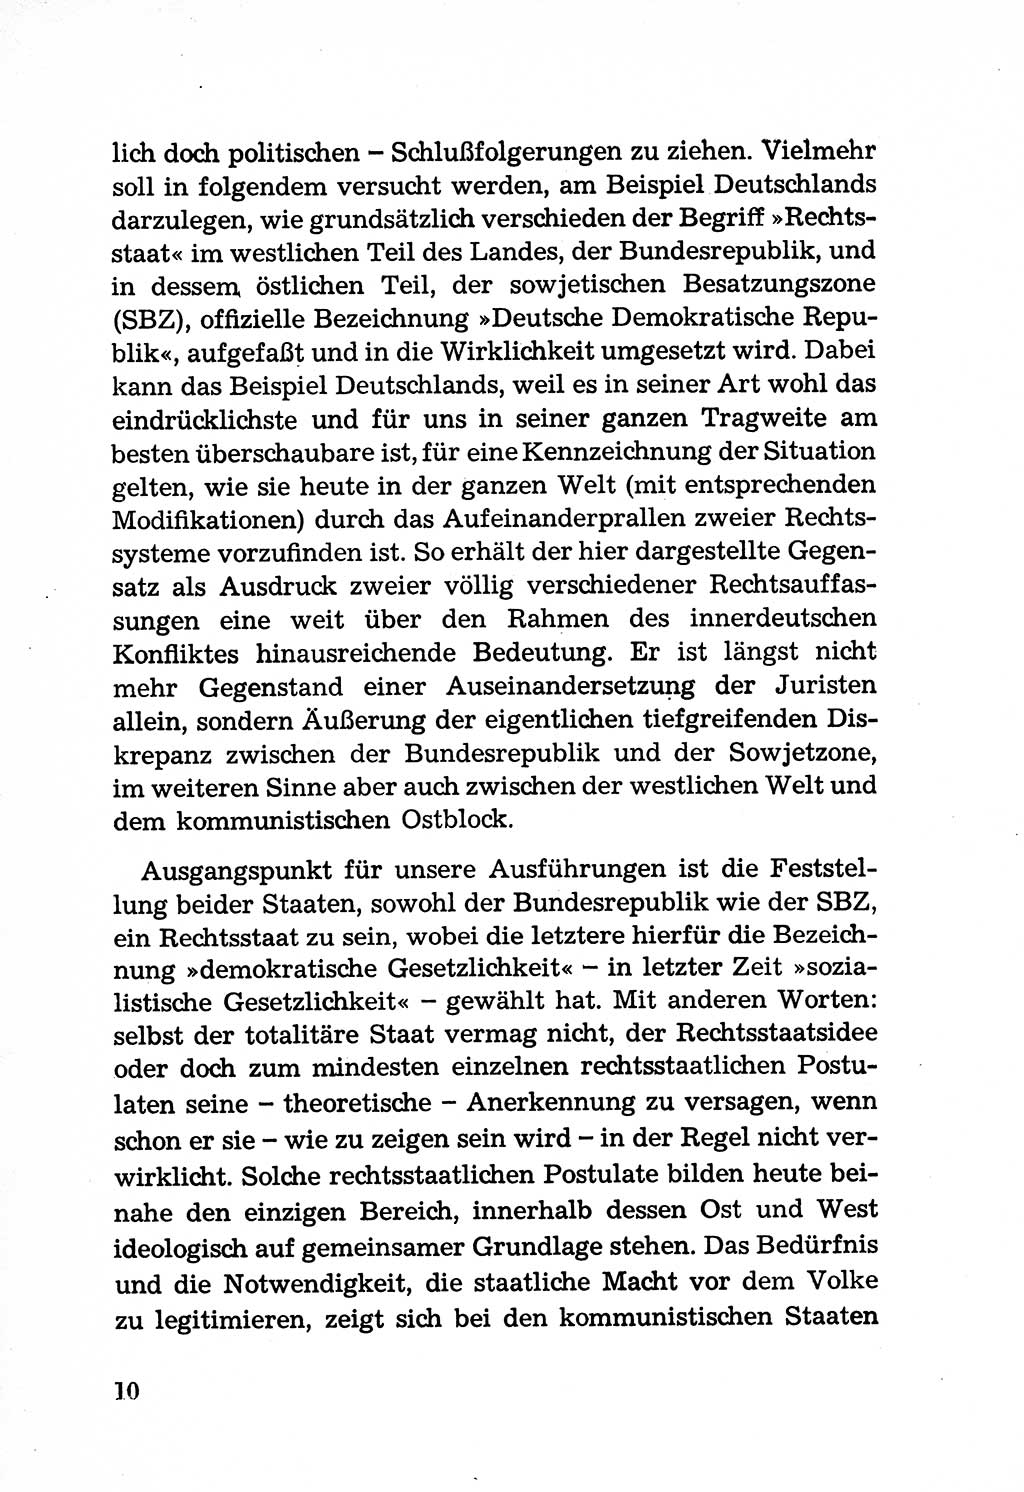 Rechtsstaat in zweierlei Hinsicht, Untersuchungsausschuß freiheitlicher Juristen (UfJ) [Bundesrepublik Deutschland (BRD)] 1956, Seite 10 (R.-St. UfJ BRD 1956, S. 10)